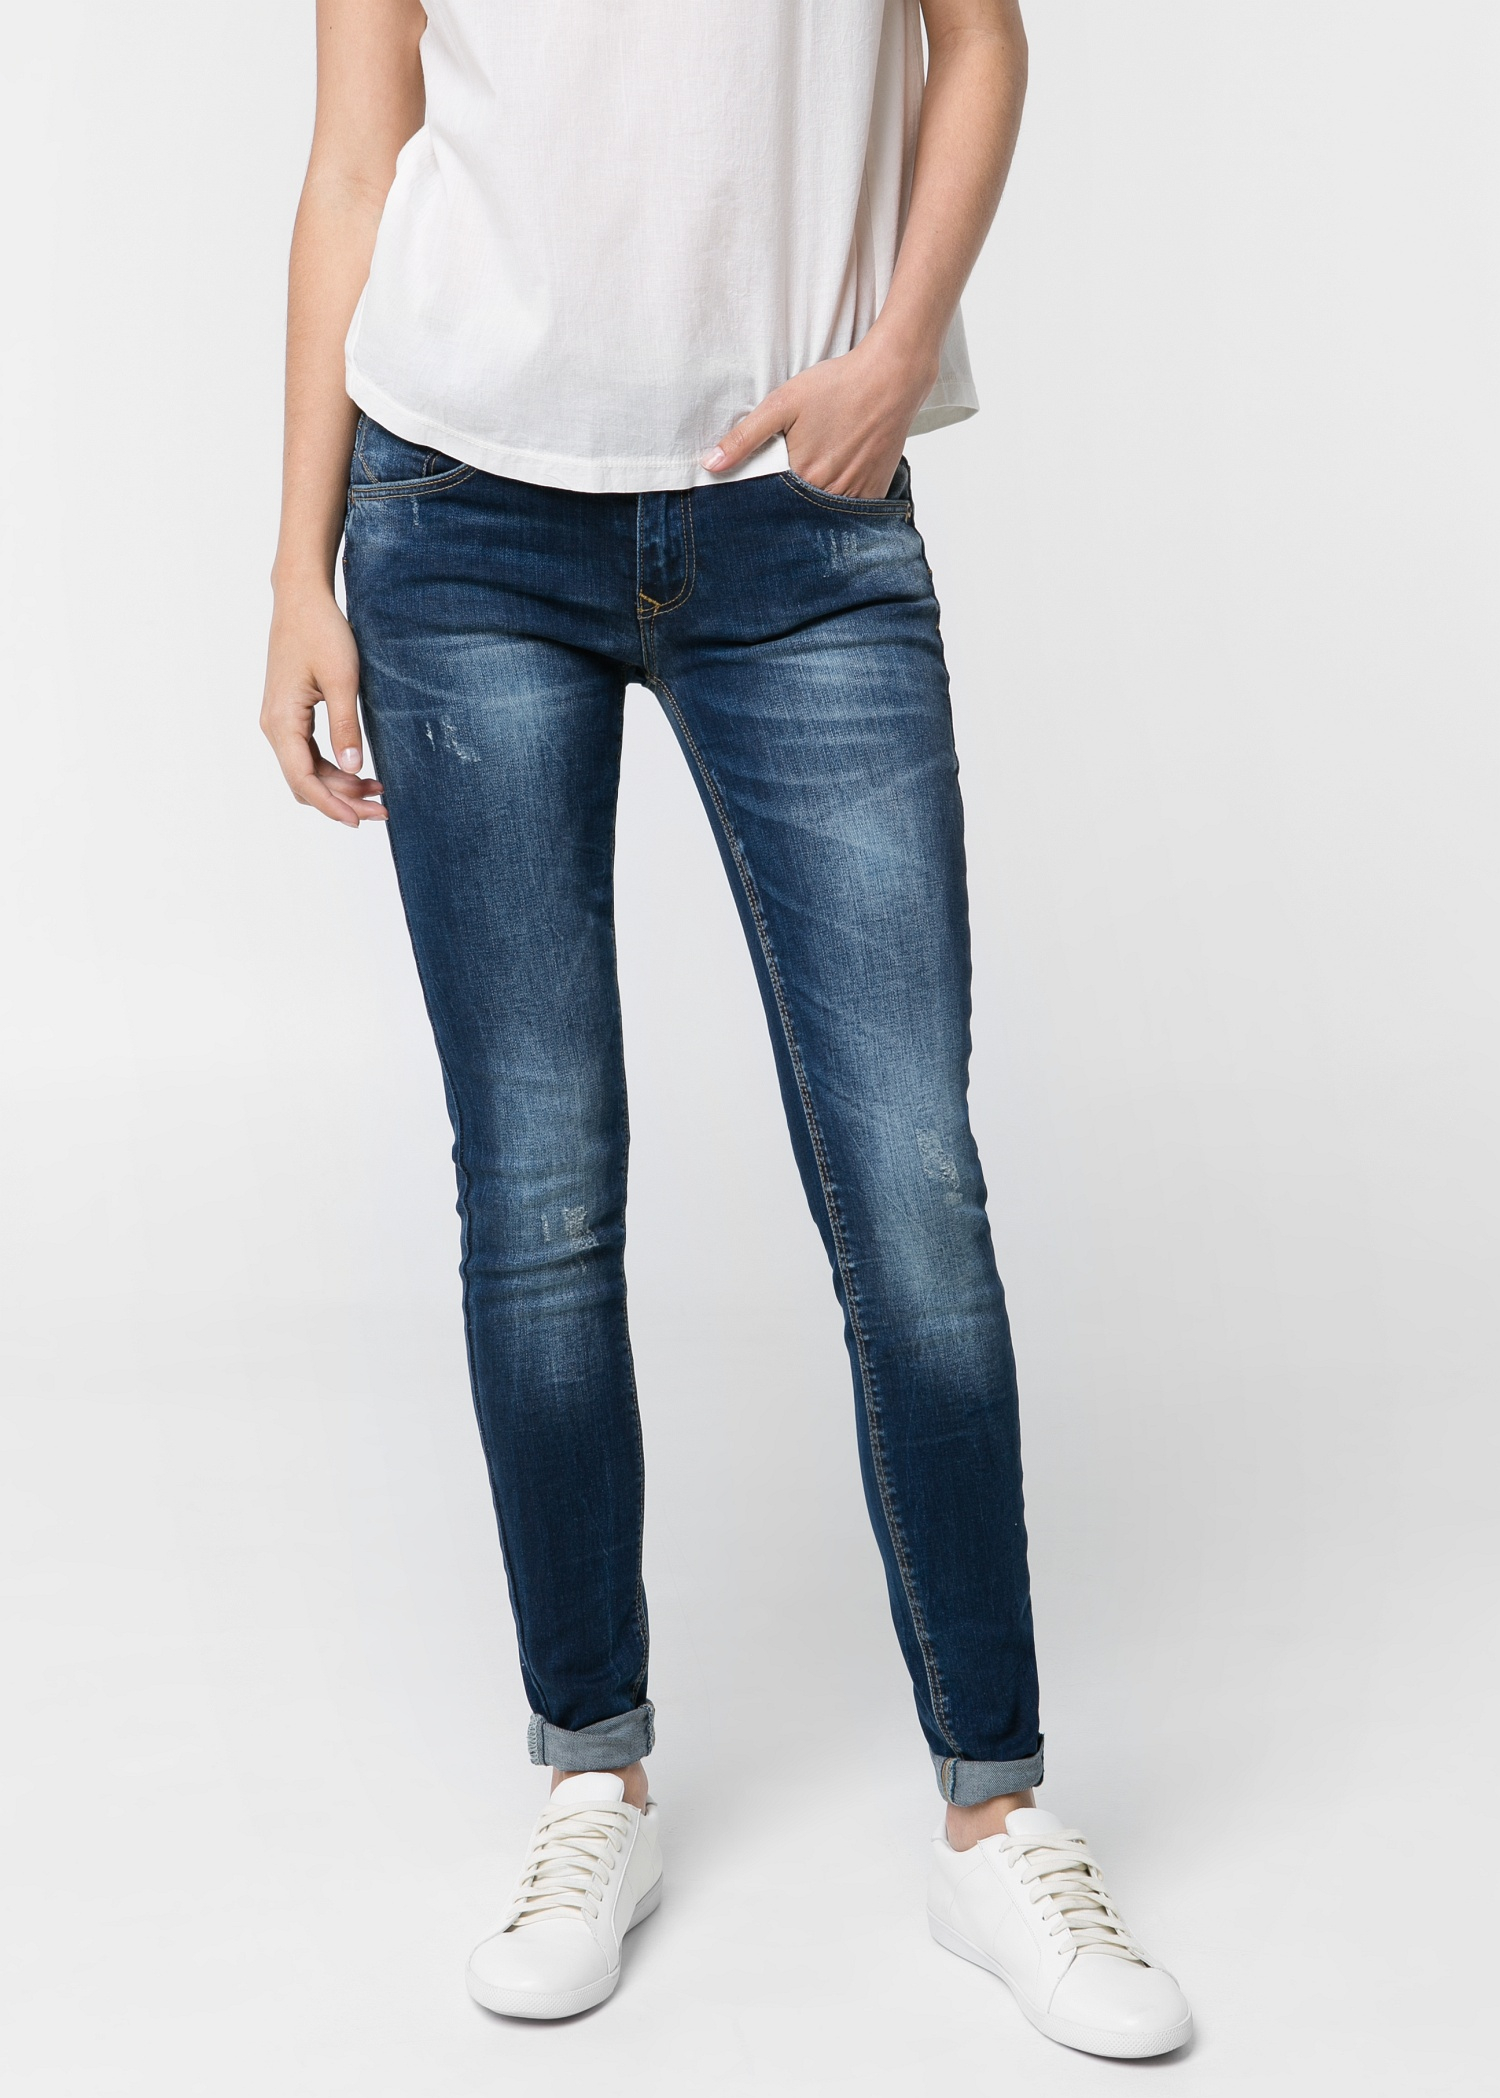 Mango Push Up Jeans Shop, 53% OFF | ilikepinga.com